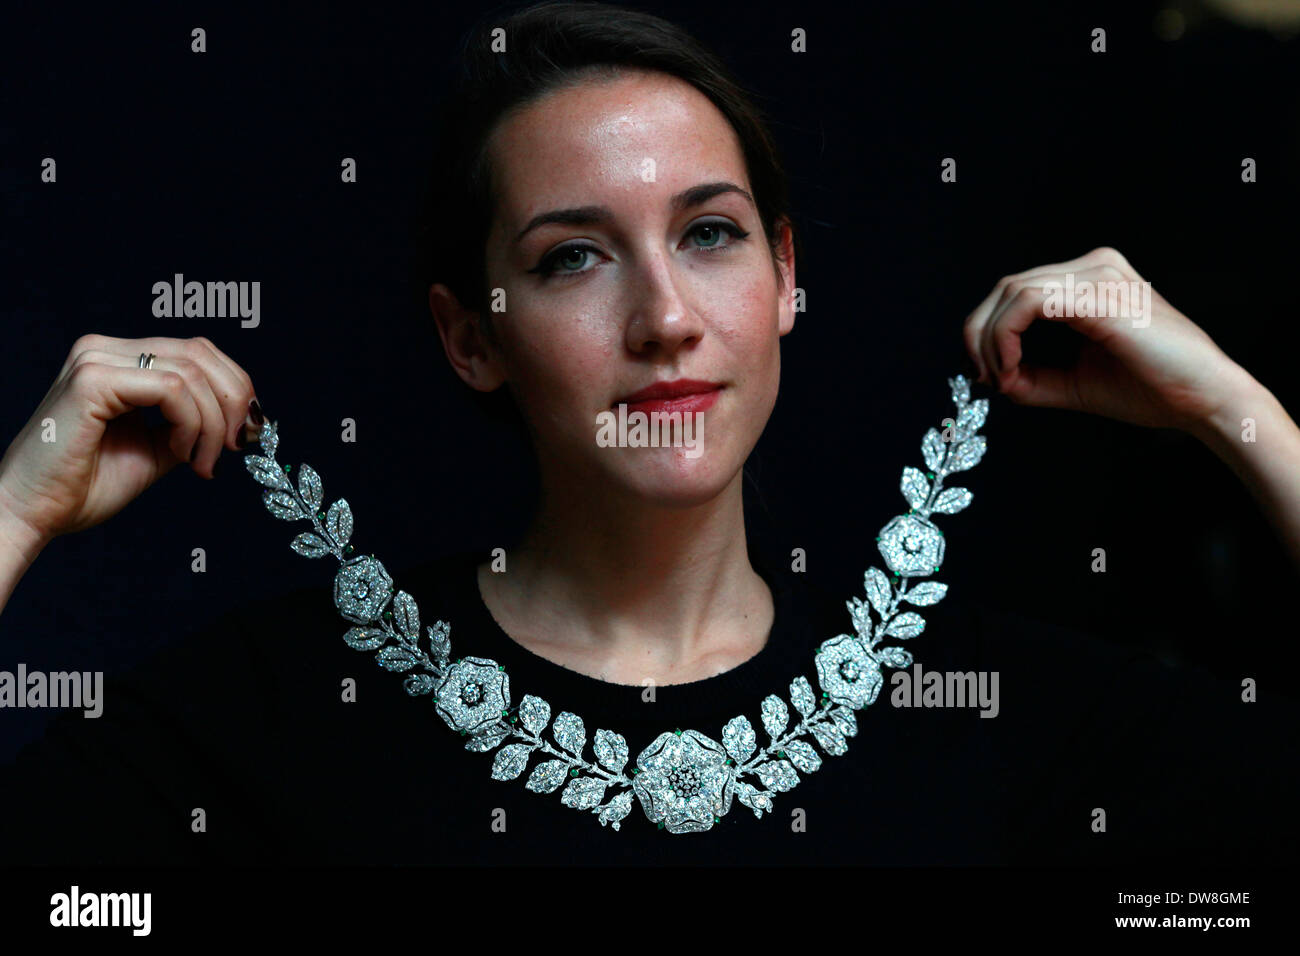 Cartier Recreates Historical High Jewellery Necklace For Ocean's 8 |  Harper's Bazaar Arabia